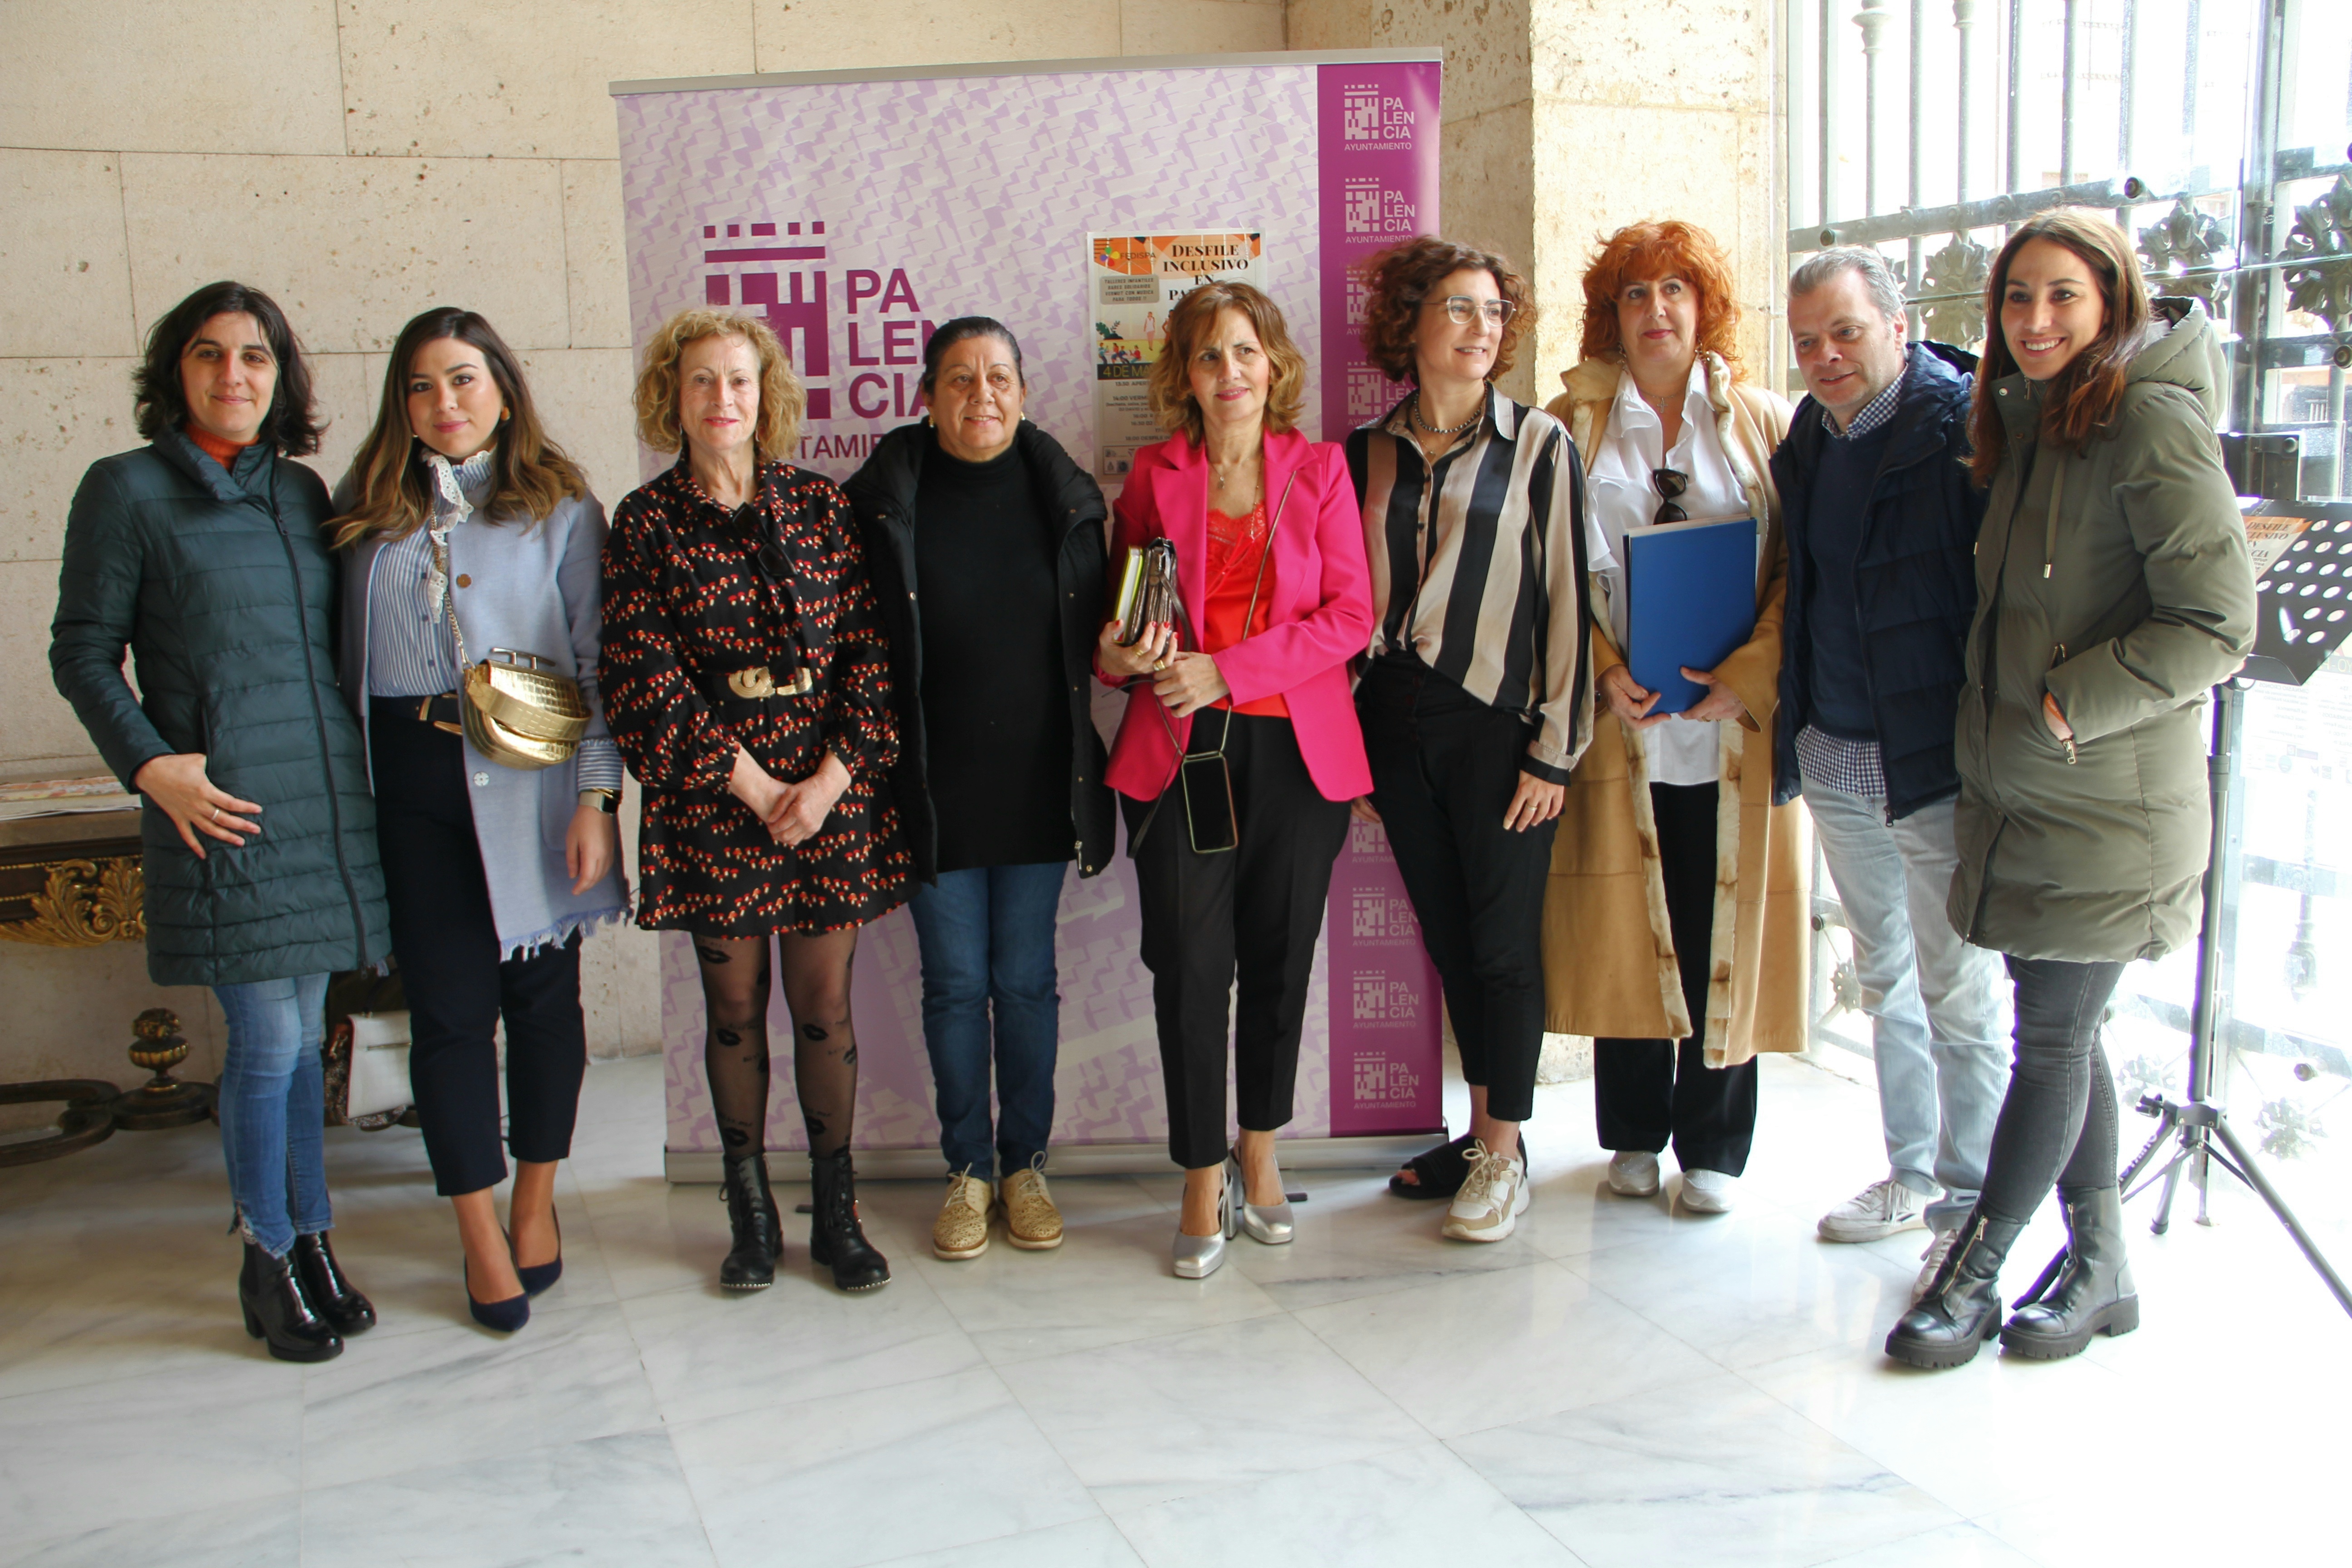 Organizado por FEDISPA en colaboración con el Ayuntamiento de Palencia persigue promocionar el comercio y la hostelería de la ciudad, así como dar visibilidad a la discapacidad.